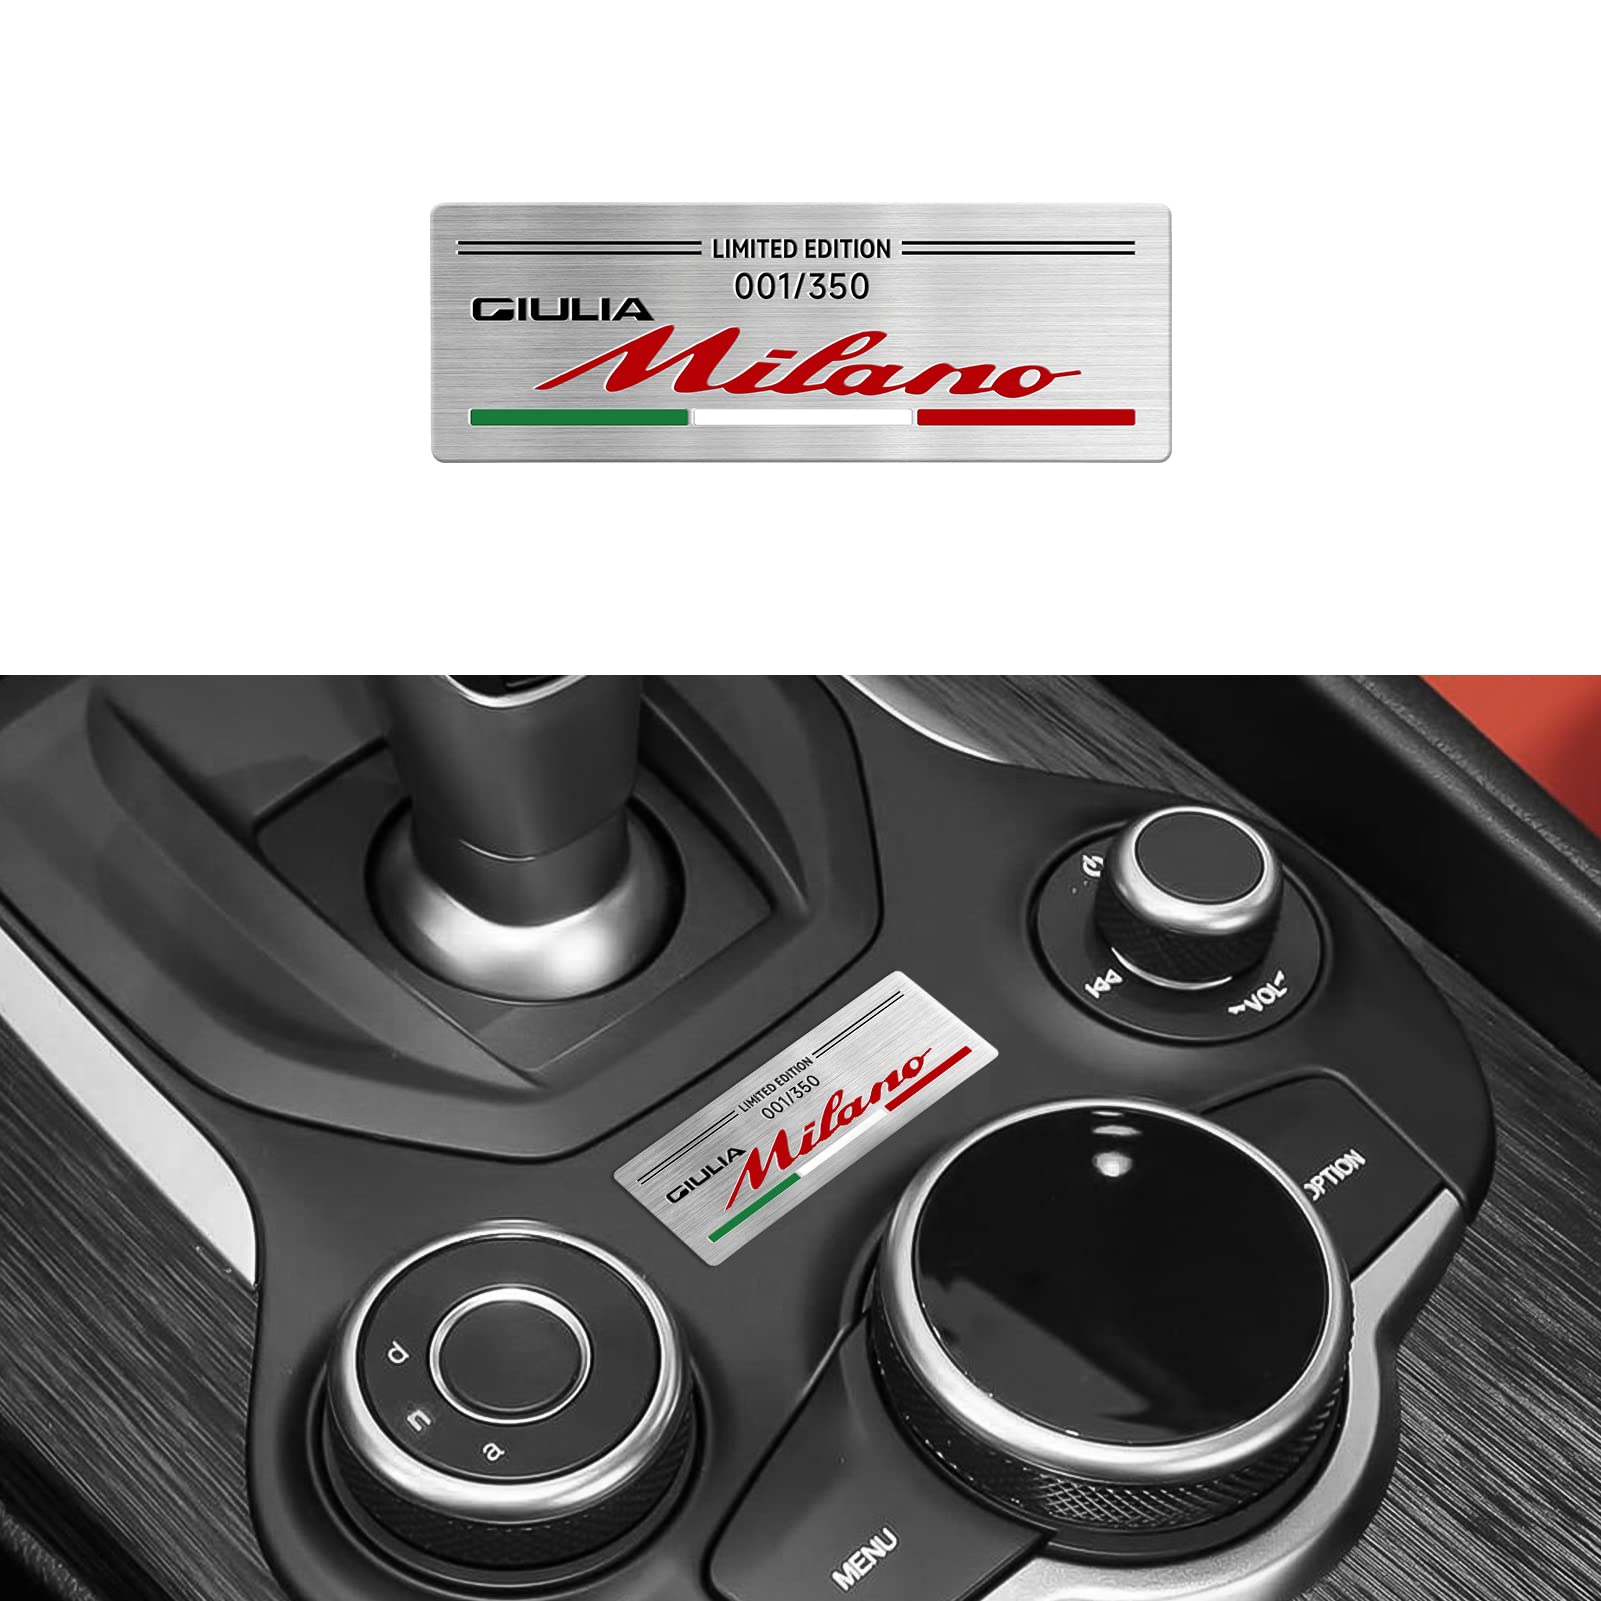 Abzeichen Aufkleber Special Limited Edition Milano Edition Logo Dekoration Kompatibel Mit Alfa Romeo Giulia Mito Stelvio GT 147 156 159 166 Car Styling (B) von OYDDL